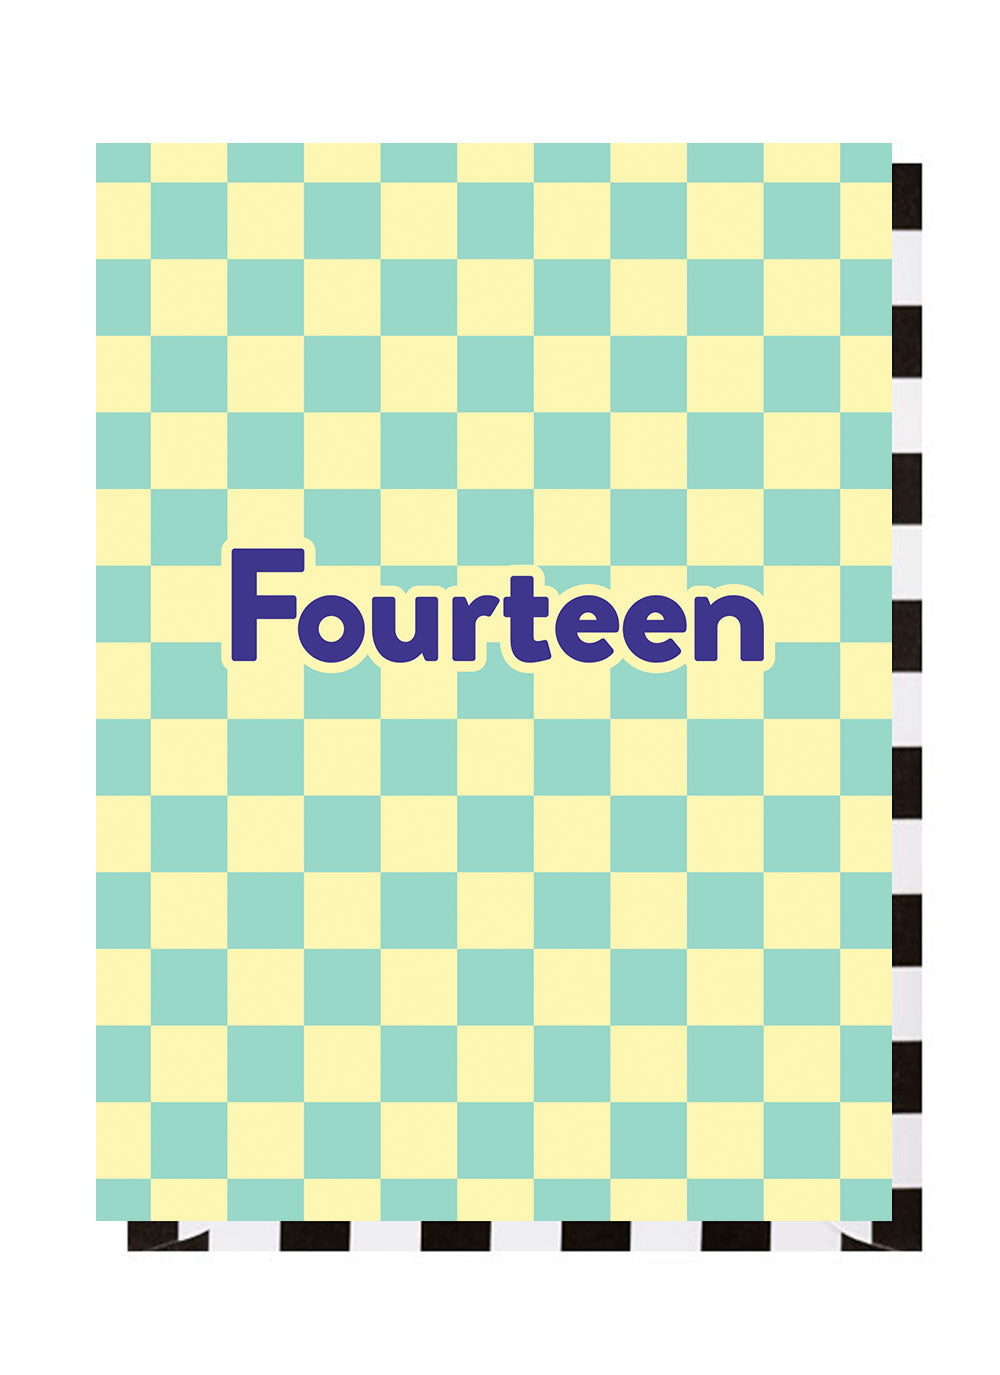 Fourteen Checkerboard 14th Birthday Card